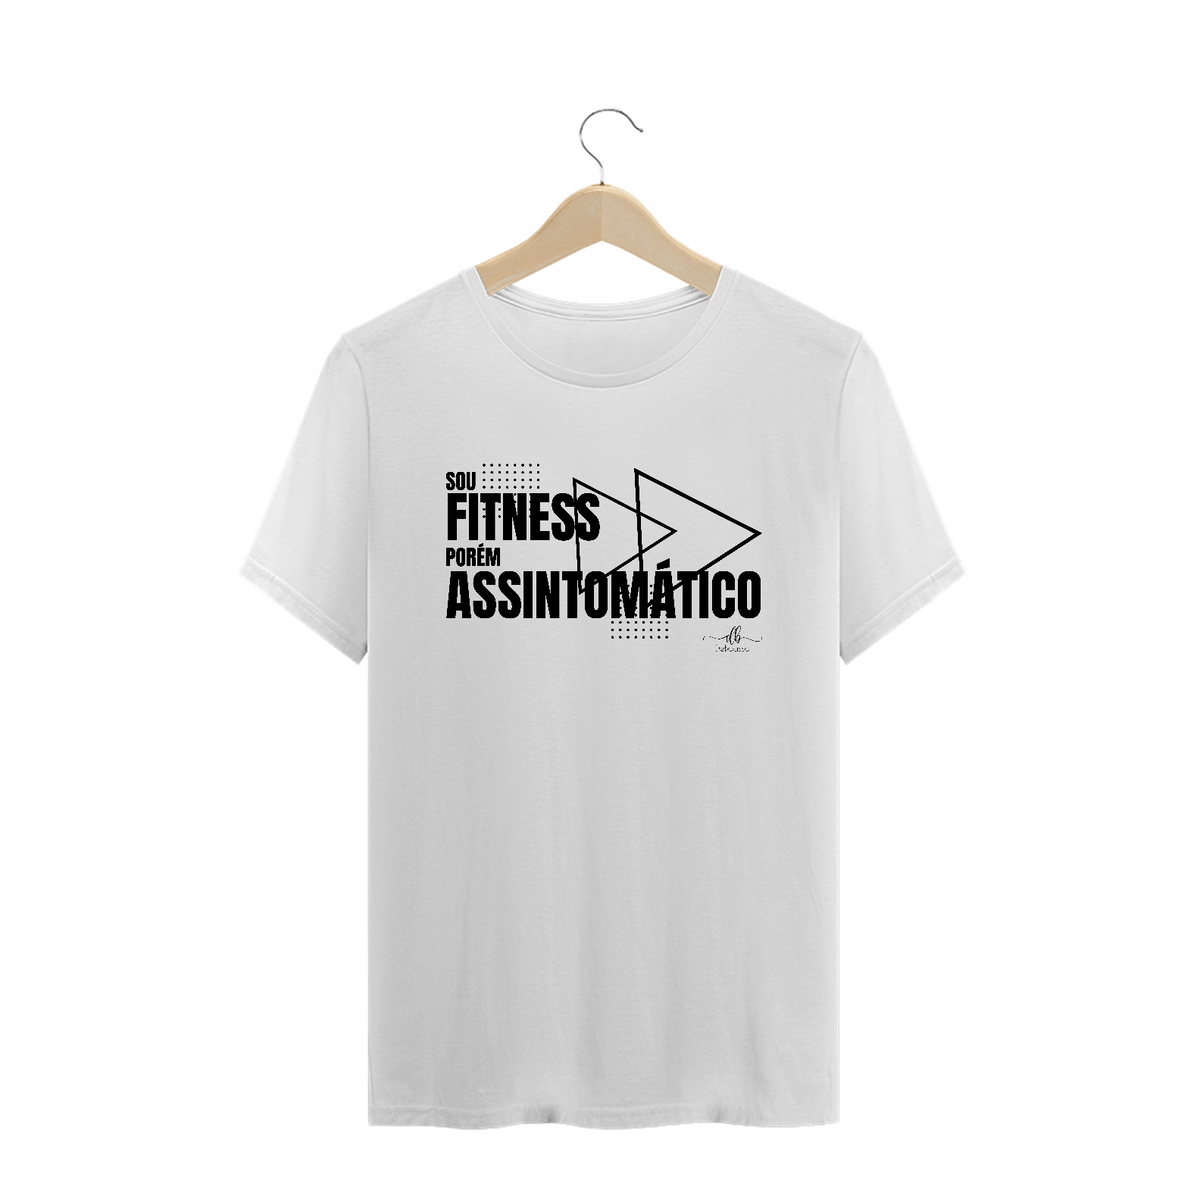 Nome do produto: Sou fitness porém assintomático. (Camiseta quality) LP